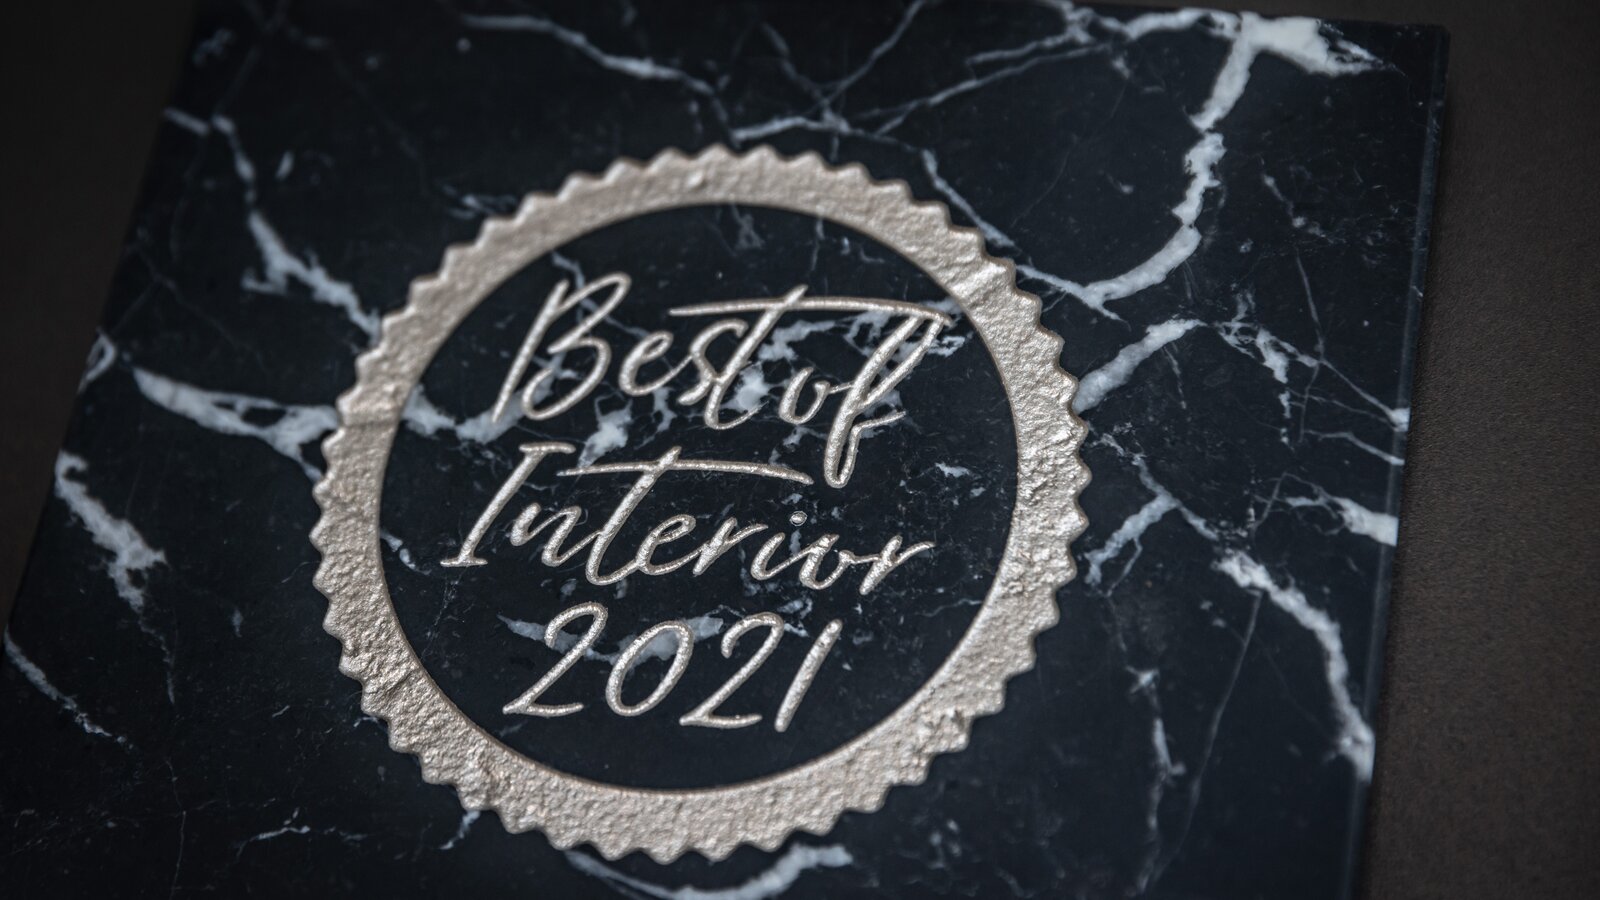 Best of Interior 2021 Preis